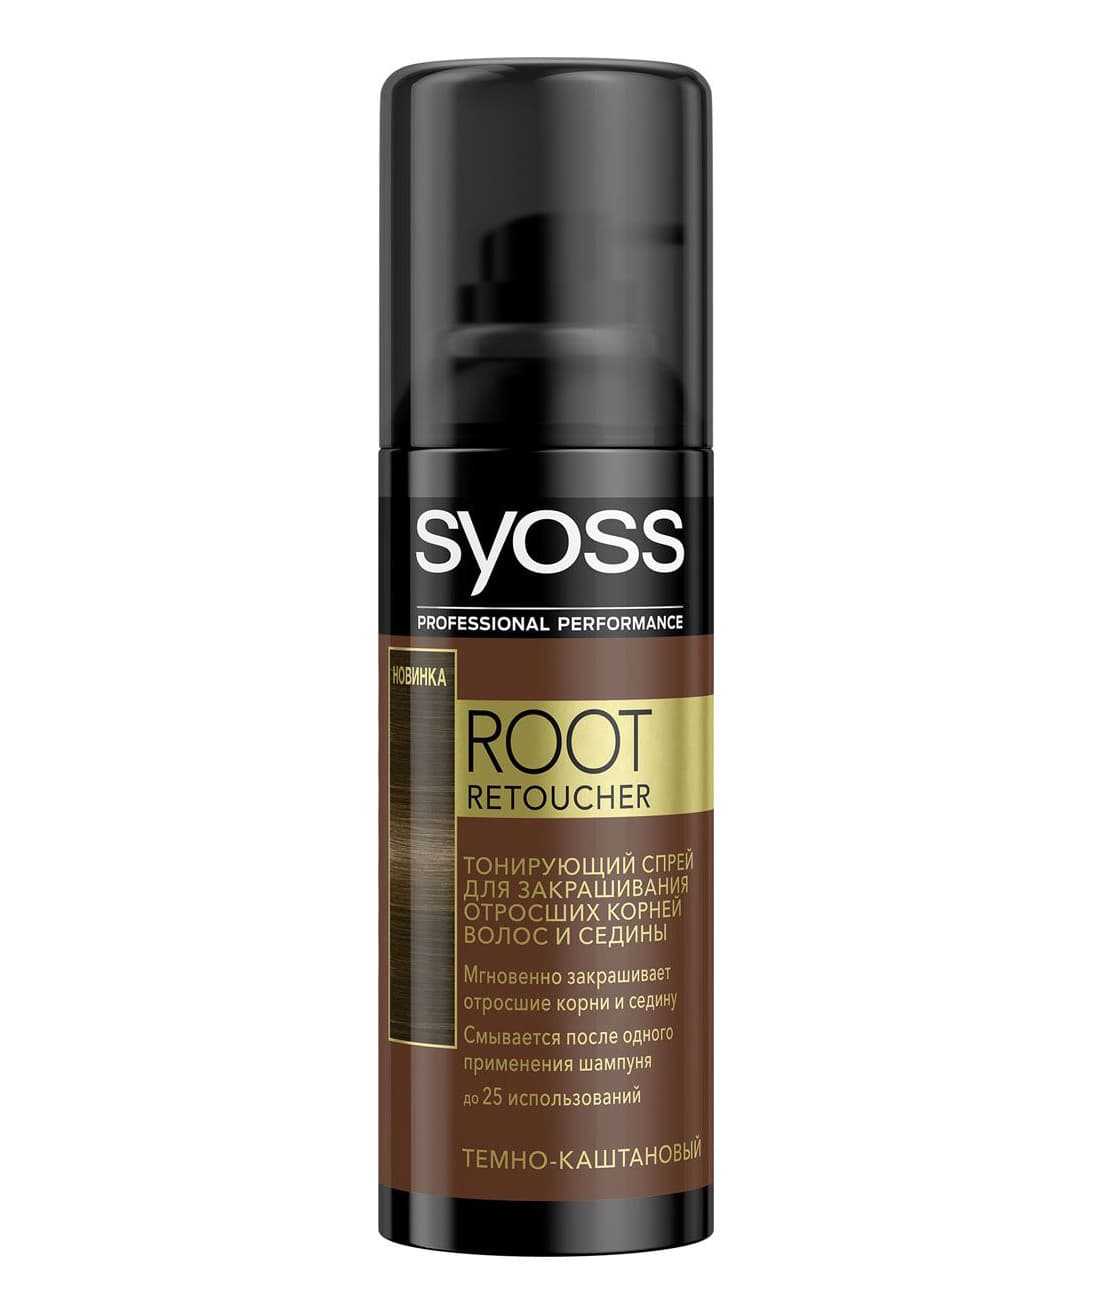 Спрей для черных волос. Syoss root Retoucher тонирующий спрей,черный 120мл. Syoss тонирующий спрей. Сьес спрей для волос тонирующий. Спрей Syoss root Retoucher русый.